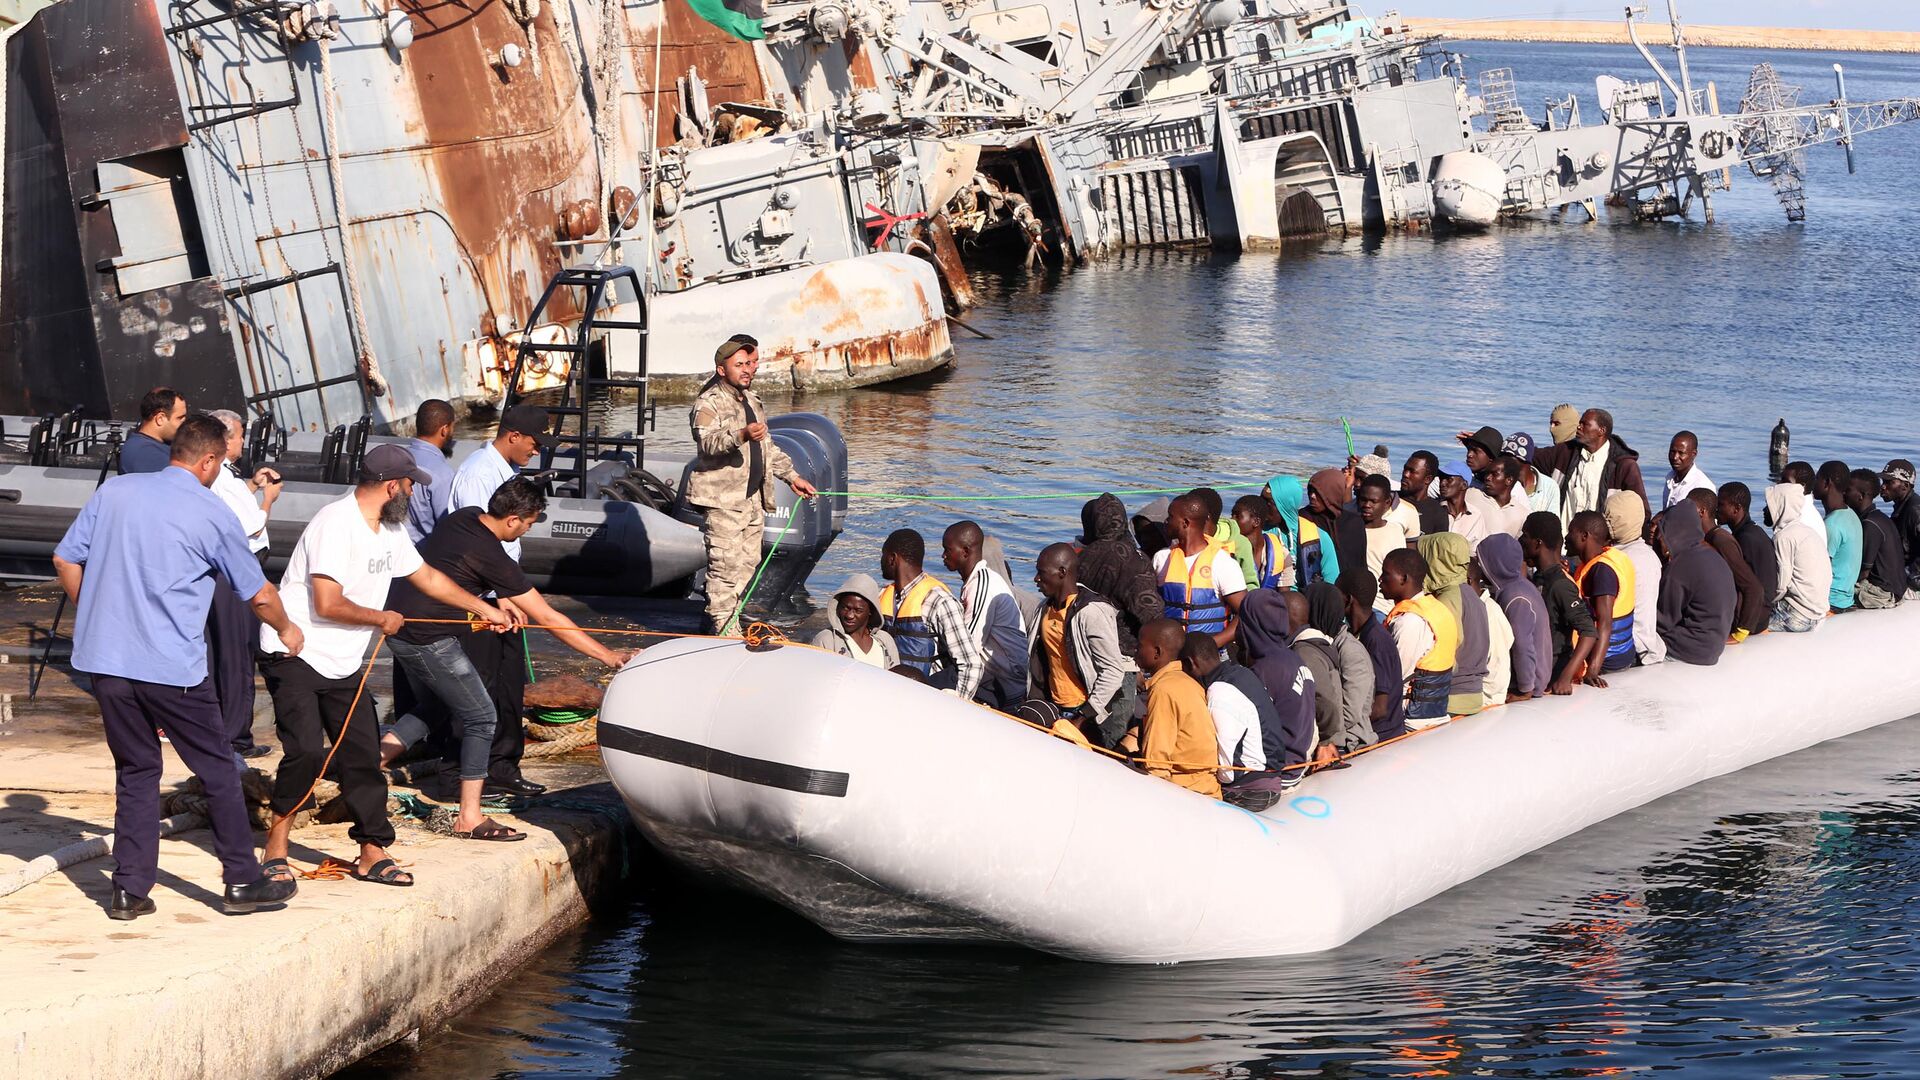  خفر السواحل الليبي يقوم بسحب قارب يحمل مهاجرين أفارقة، تم إنقاذهم أثناء محاولتهم الوصول إلى أوروبا بطريقة غير شرعية، في قاعدة بحرية بالقرب من العاصمة طرابلس في 29 سبتمبر/ أيلول 2015. - سبوتنيك عربي, 1920, 25.11.2021